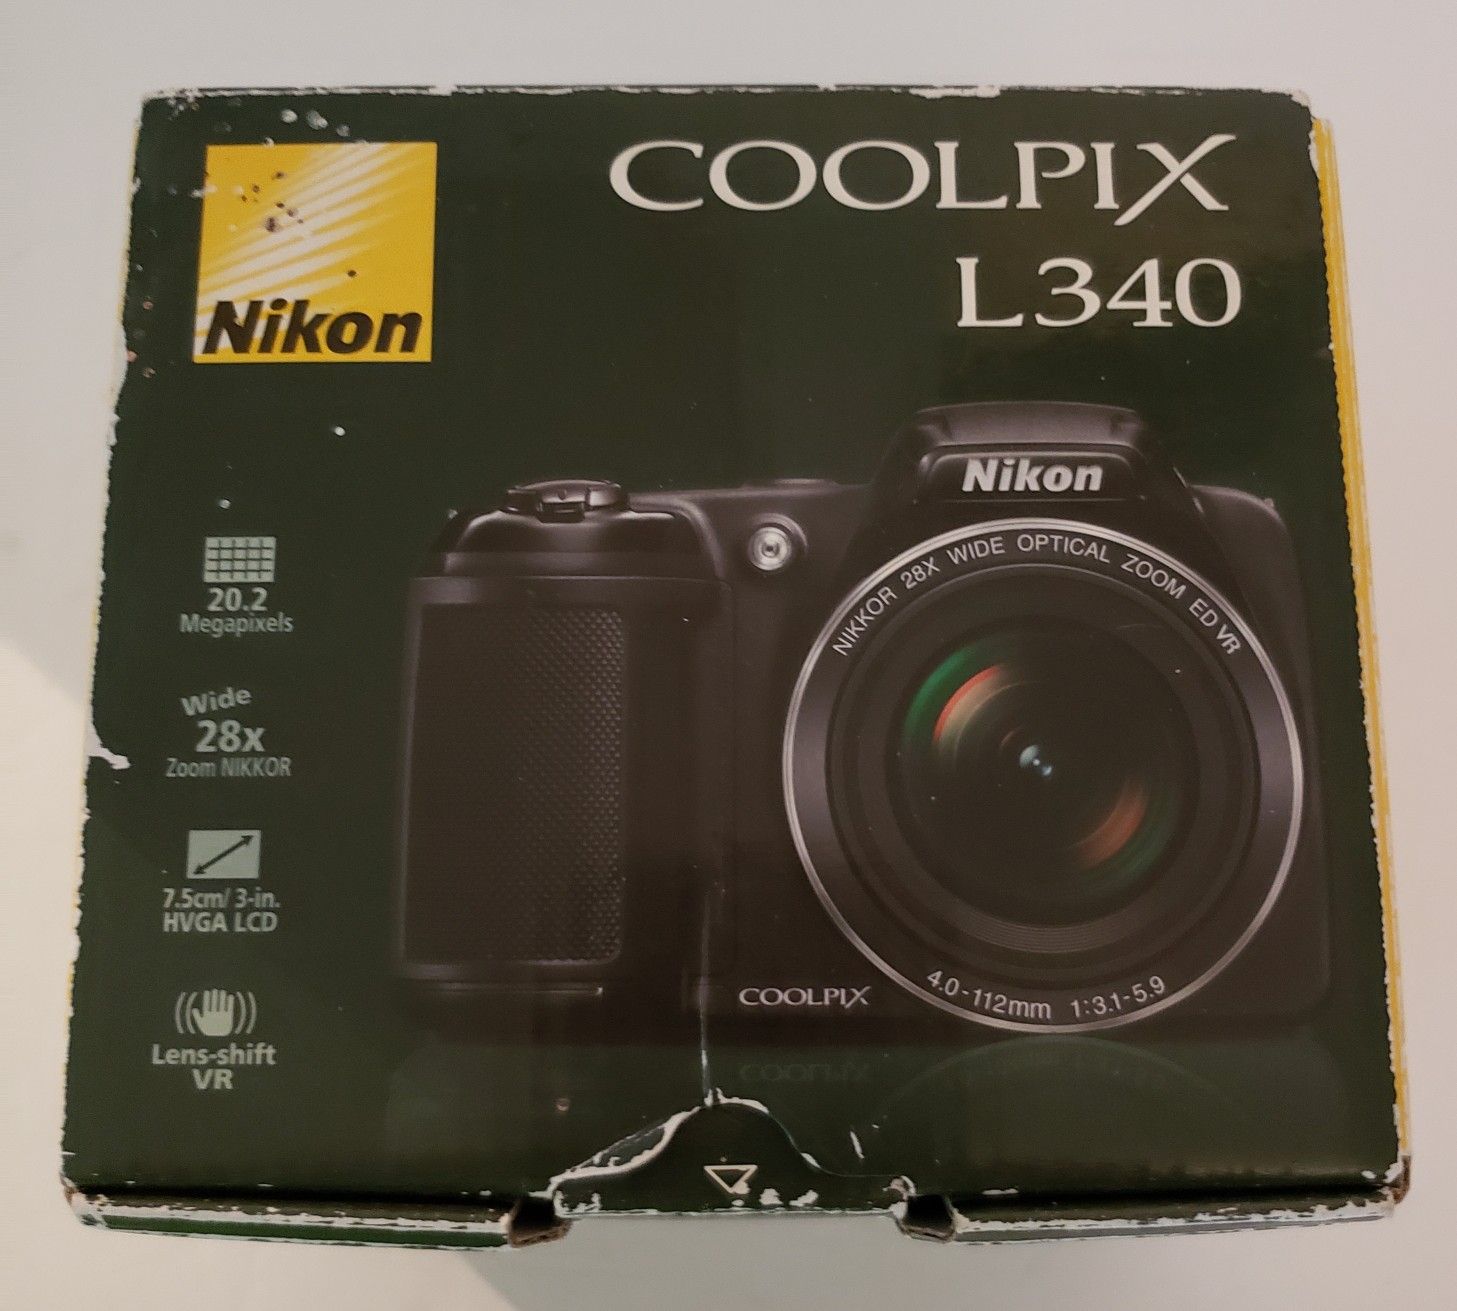 Nikon Coolpix L340 digital camera